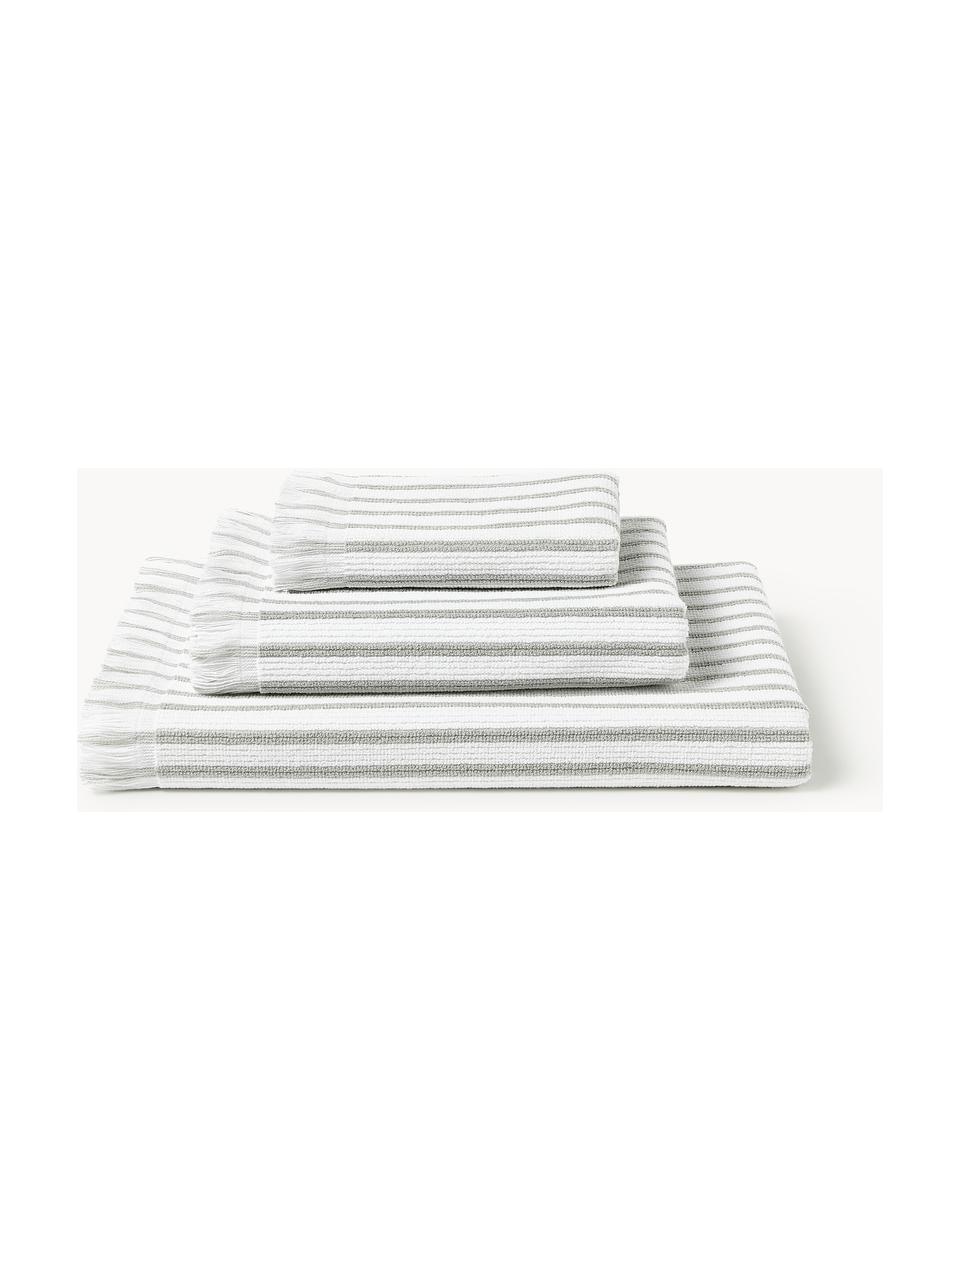 Handtuch-Set Irma, in verschiedenen Setgrößen, Weiß, Hellgrau, 4er-Set (Handtuch & Duschtuch)